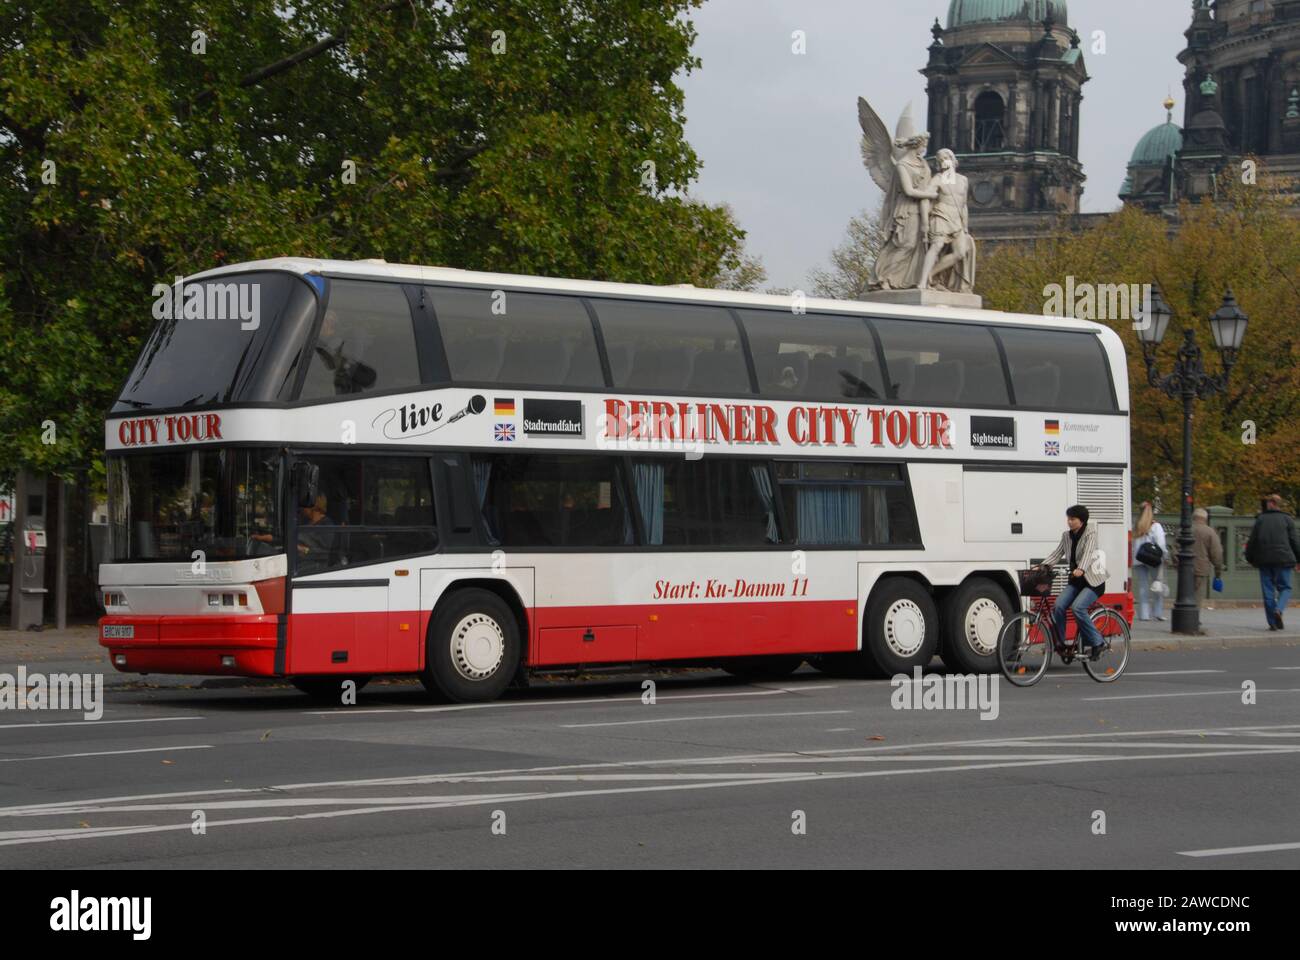 Un autobus turistico, Berliner City Tour a Unter der Linden, nel centro di Berlino, Germania Foto Stock